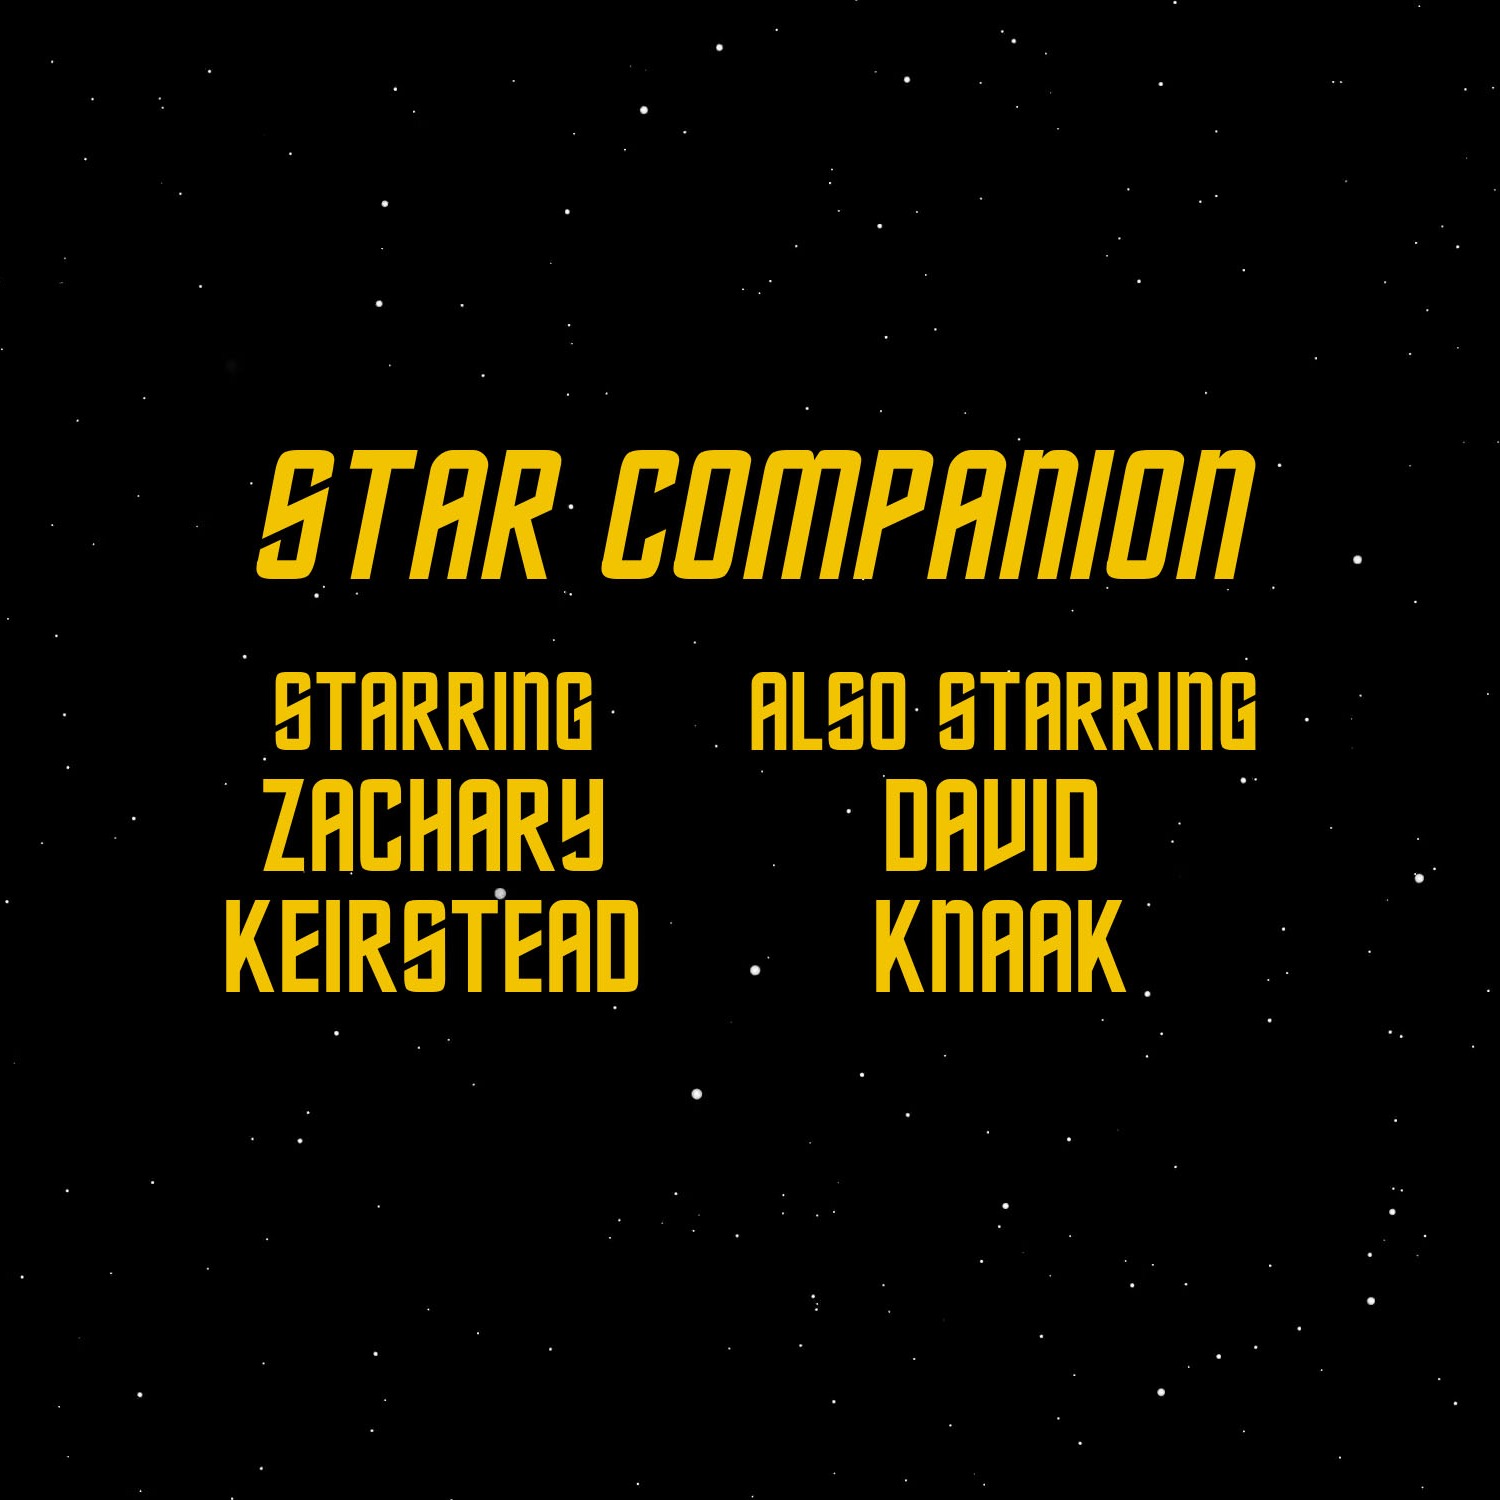 cover art for Star Trek Enterprise: S3 Episode 1 "The Xindi"